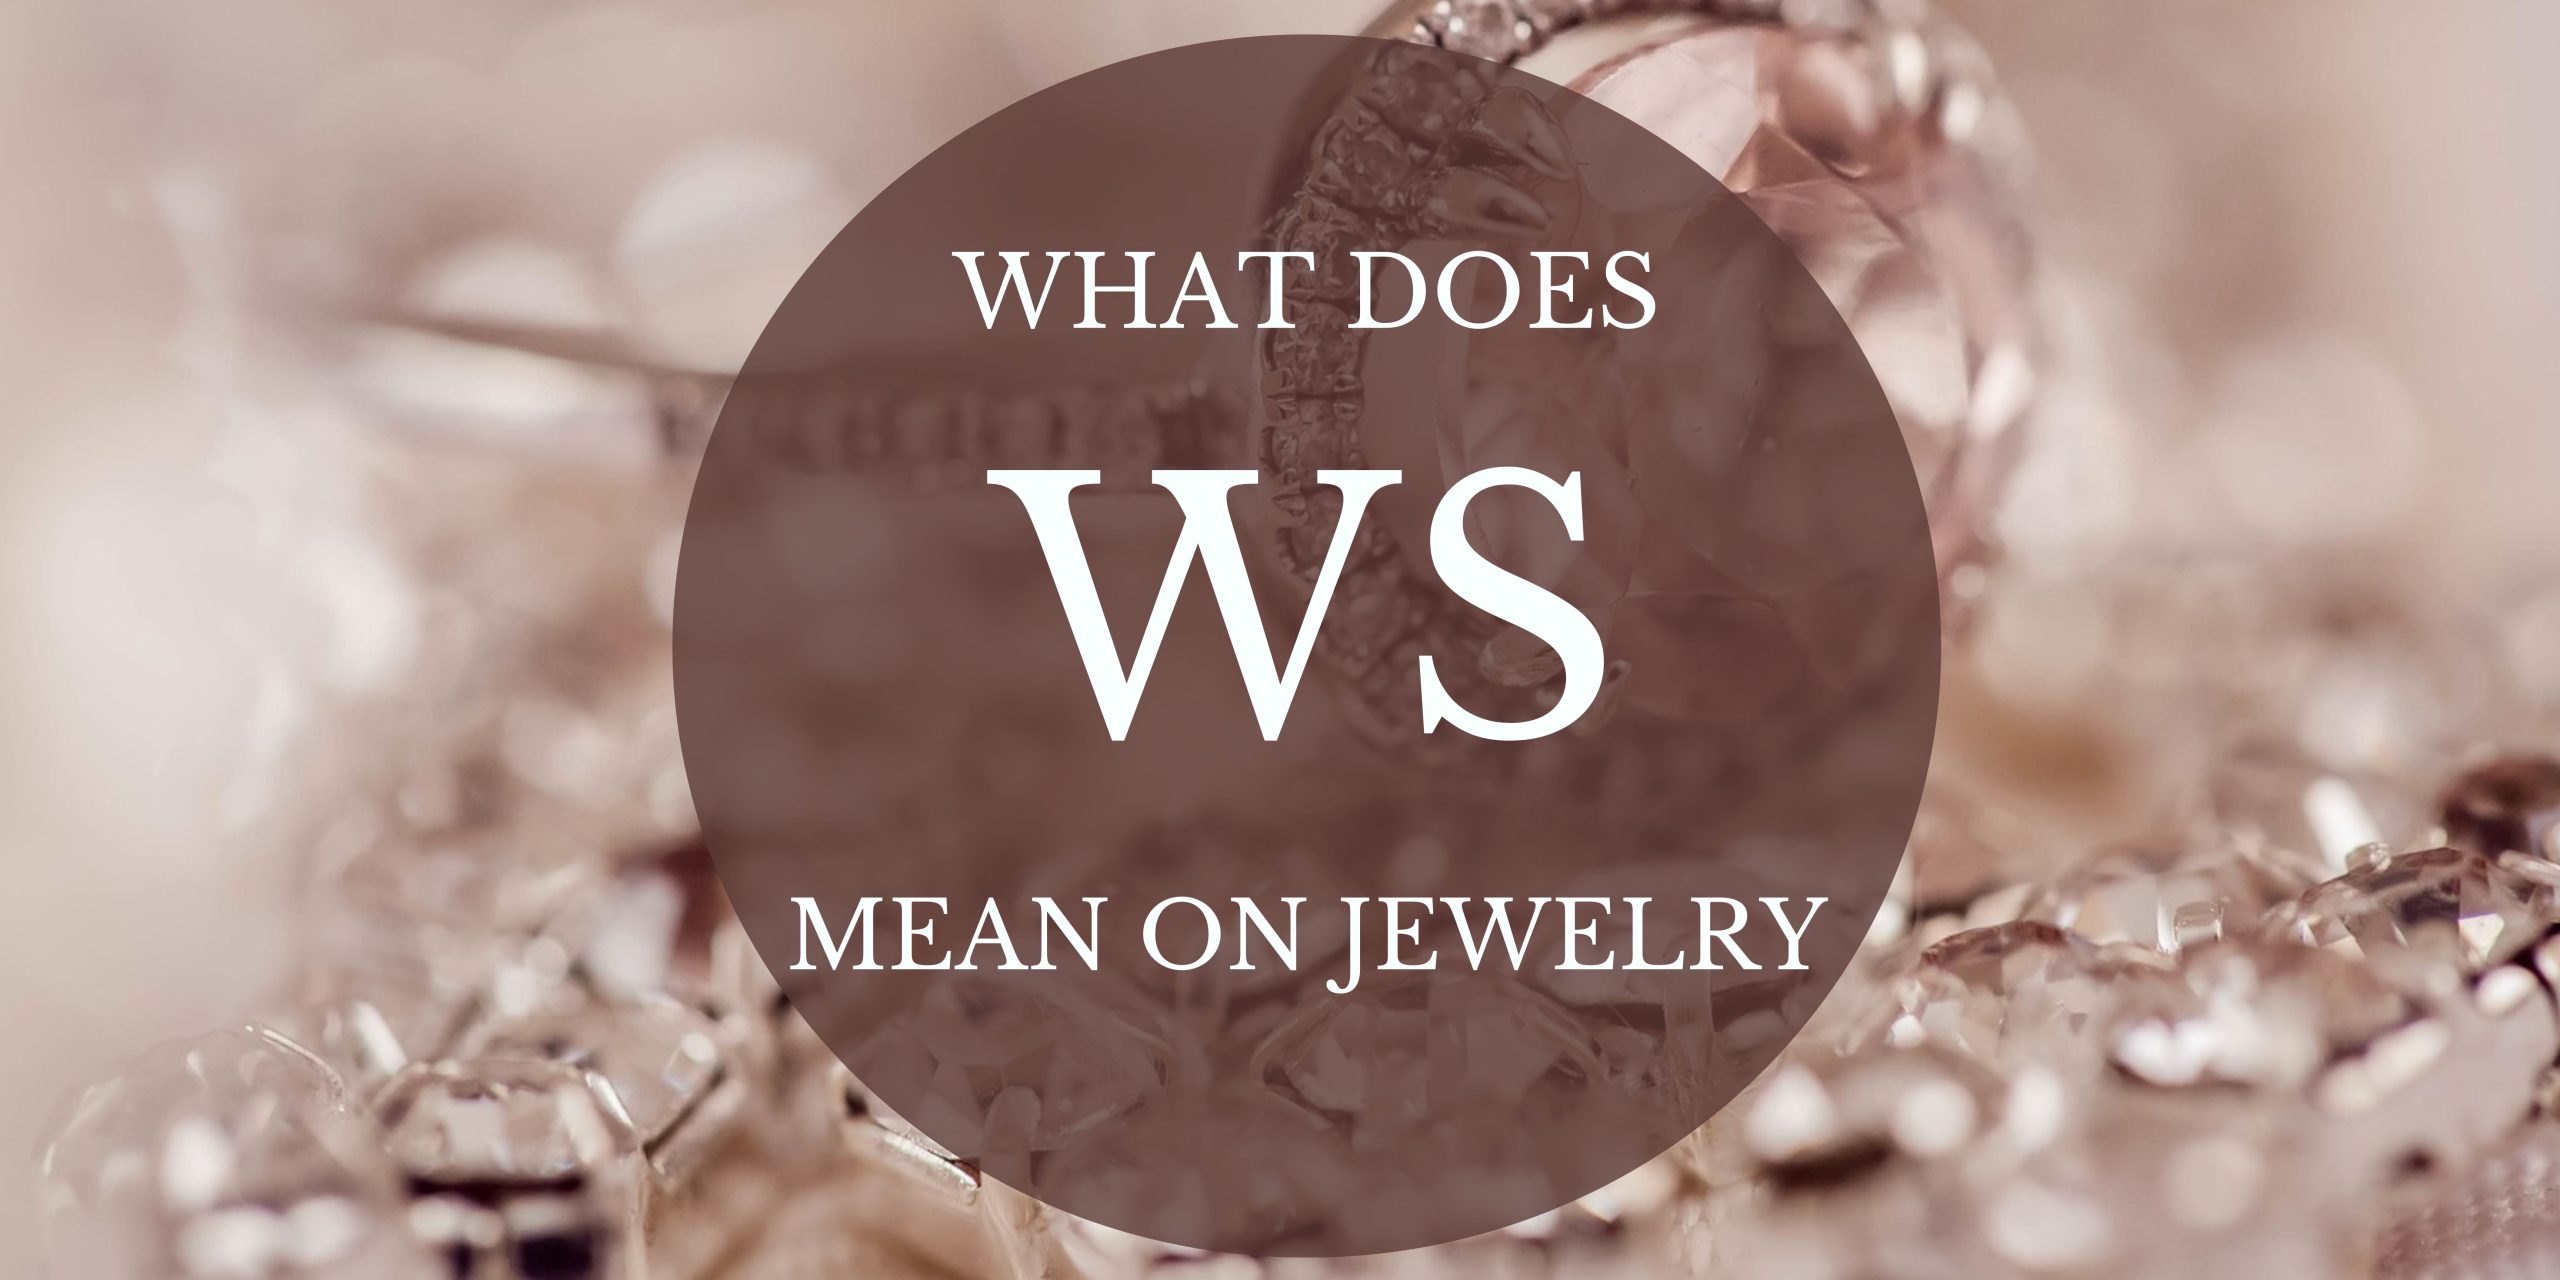 WS jewelry mark